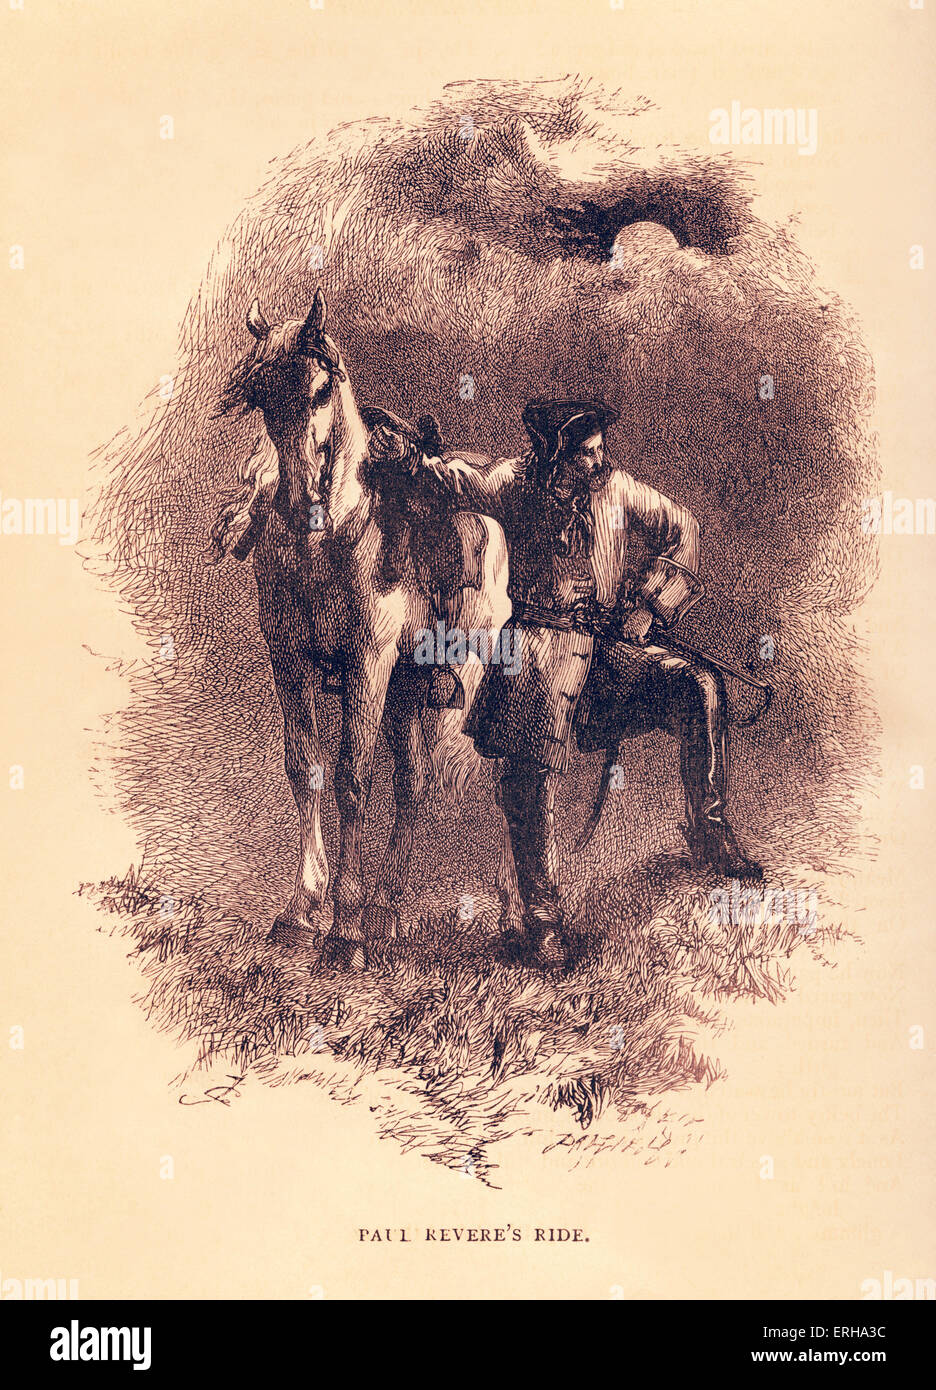 Henry Wadsworth Longfellow Gedicht "Revere Ride" - Porträt von Paul Revere neben seinem Pferd. Illustration von Sir John Stockfoto